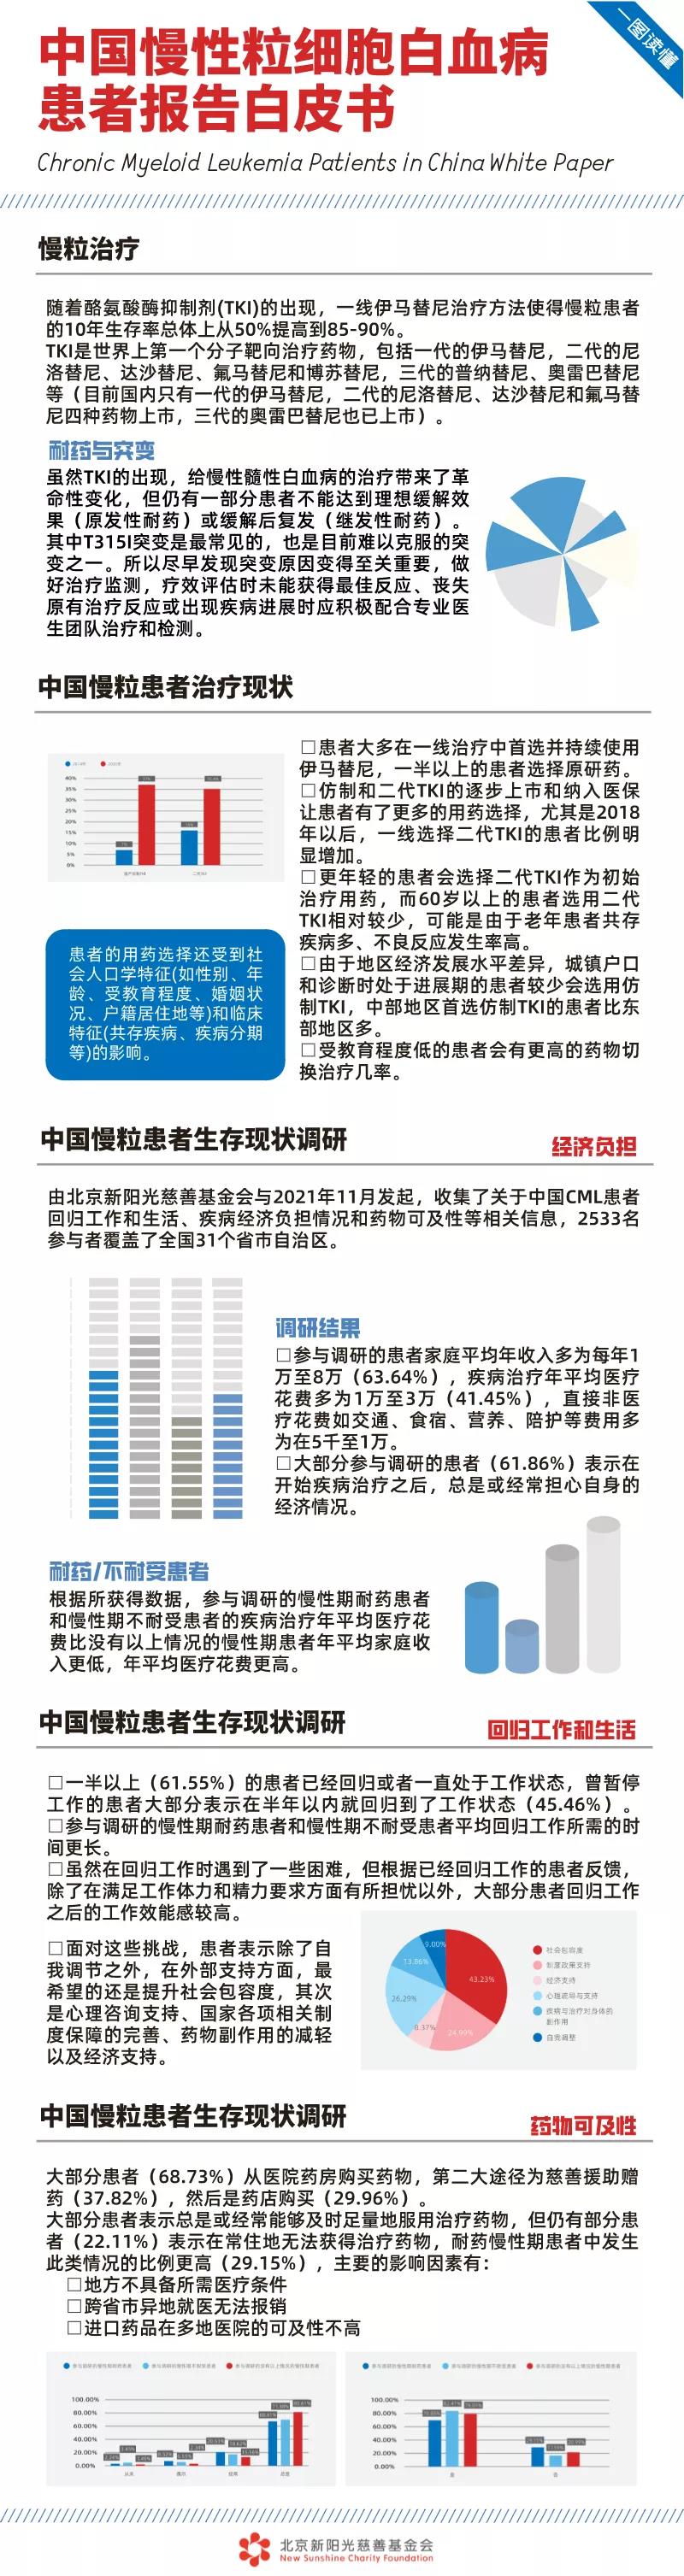 一图读懂《2021年中国慢性粒细胞白血病患者报告白皮书》